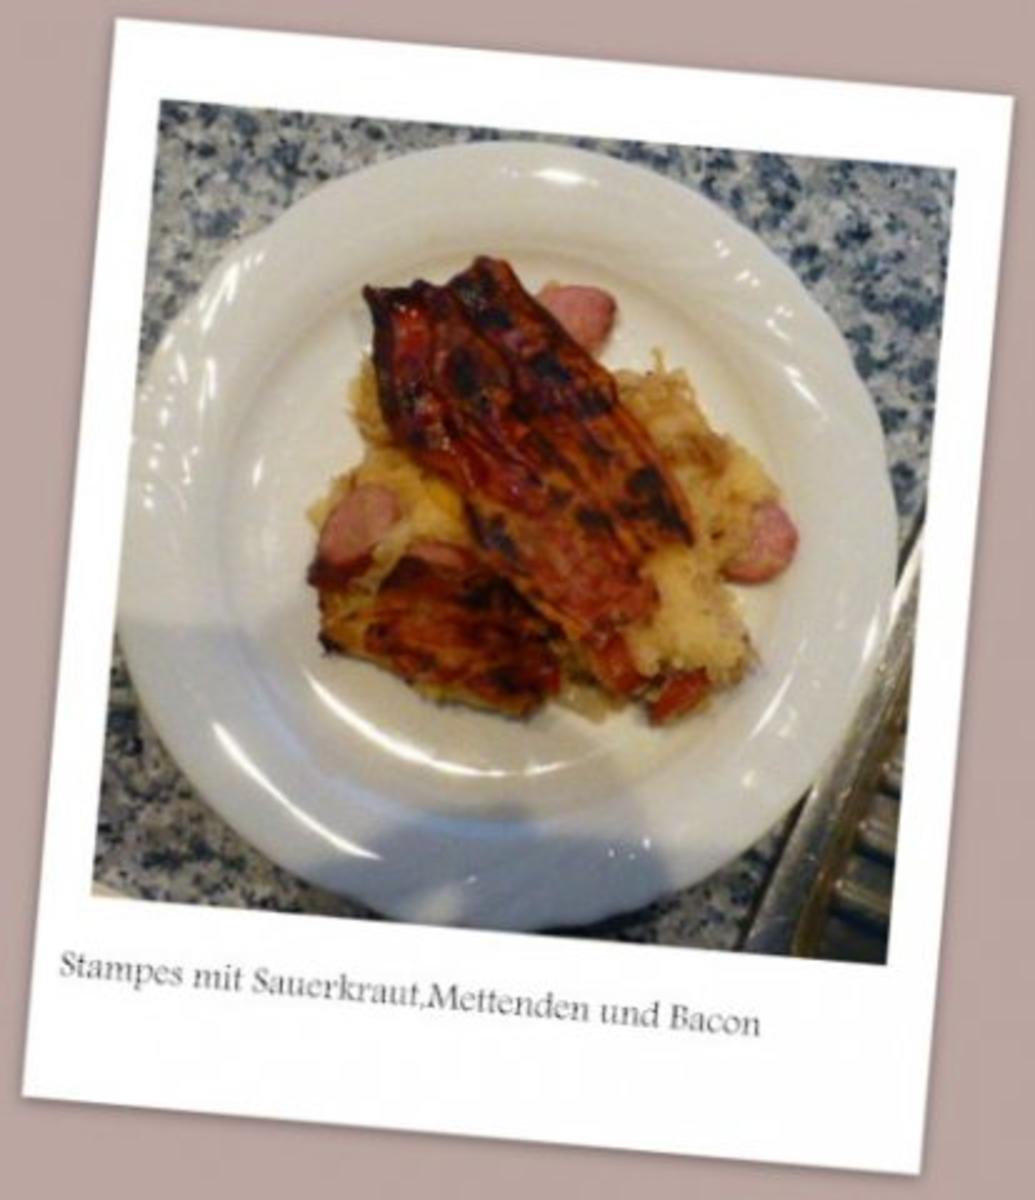 Stampes mit Sauerkraut,Mettendchen und Bacon - Rezept - Bild Nr. 9